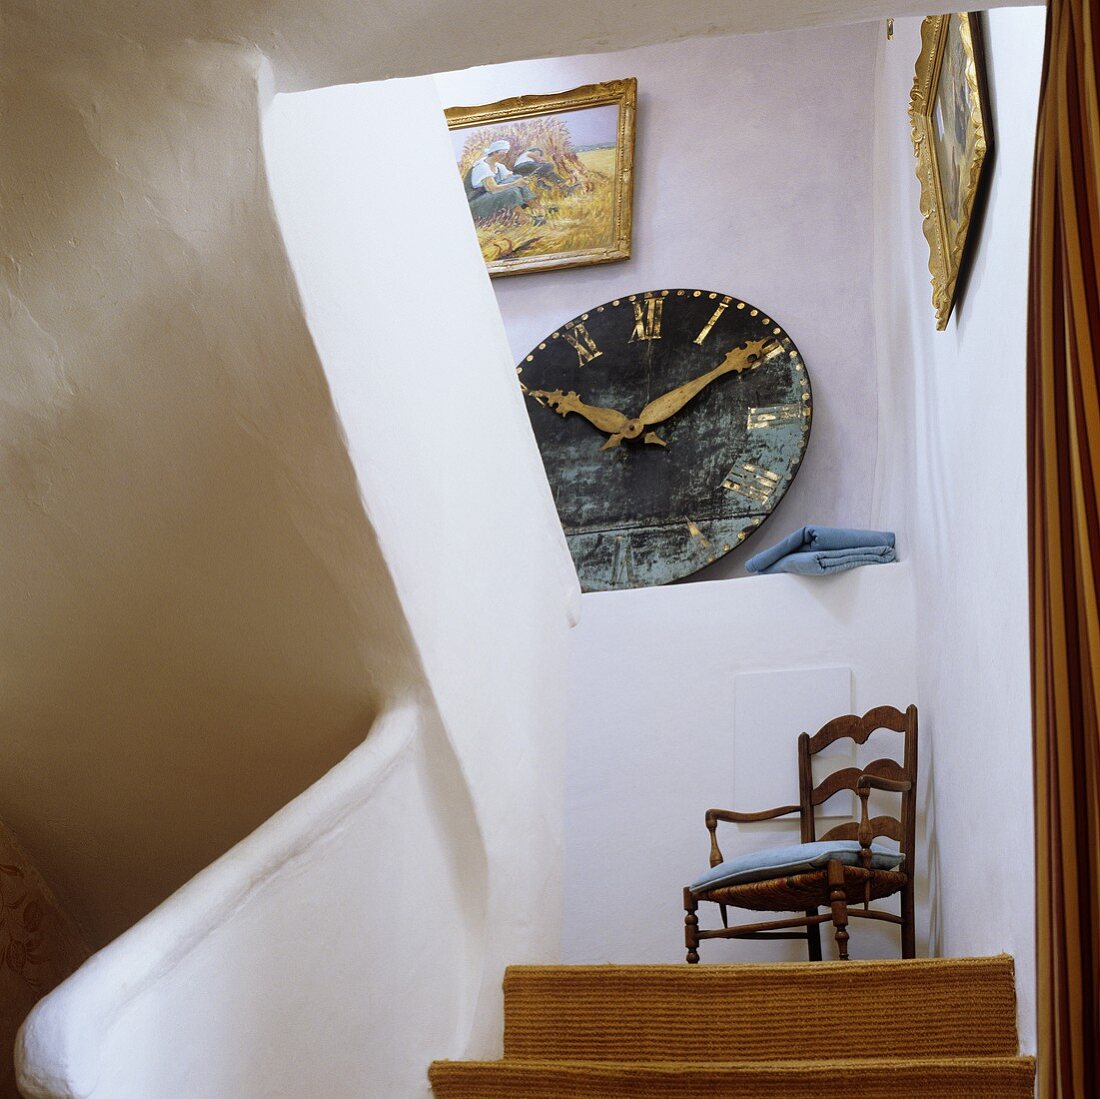 Treppenaufgang mit Blick auf Wanduhr auf der Ablage und Holzstuhl auf dem Podest im ländlichem Treppenhaus